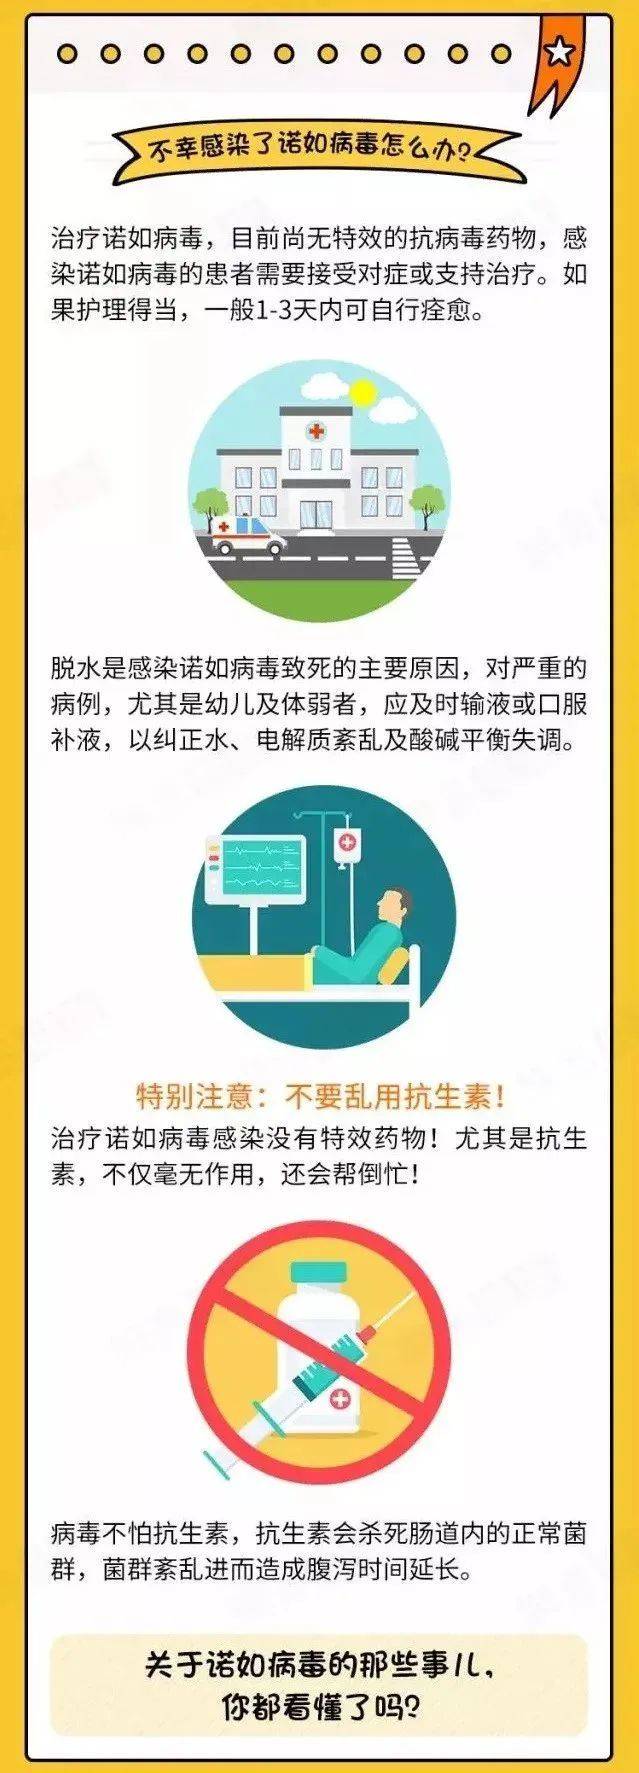 病毒|中国农业大学发布紧急通知！部分学生、职工感染诺如病毒，已启动应急预案